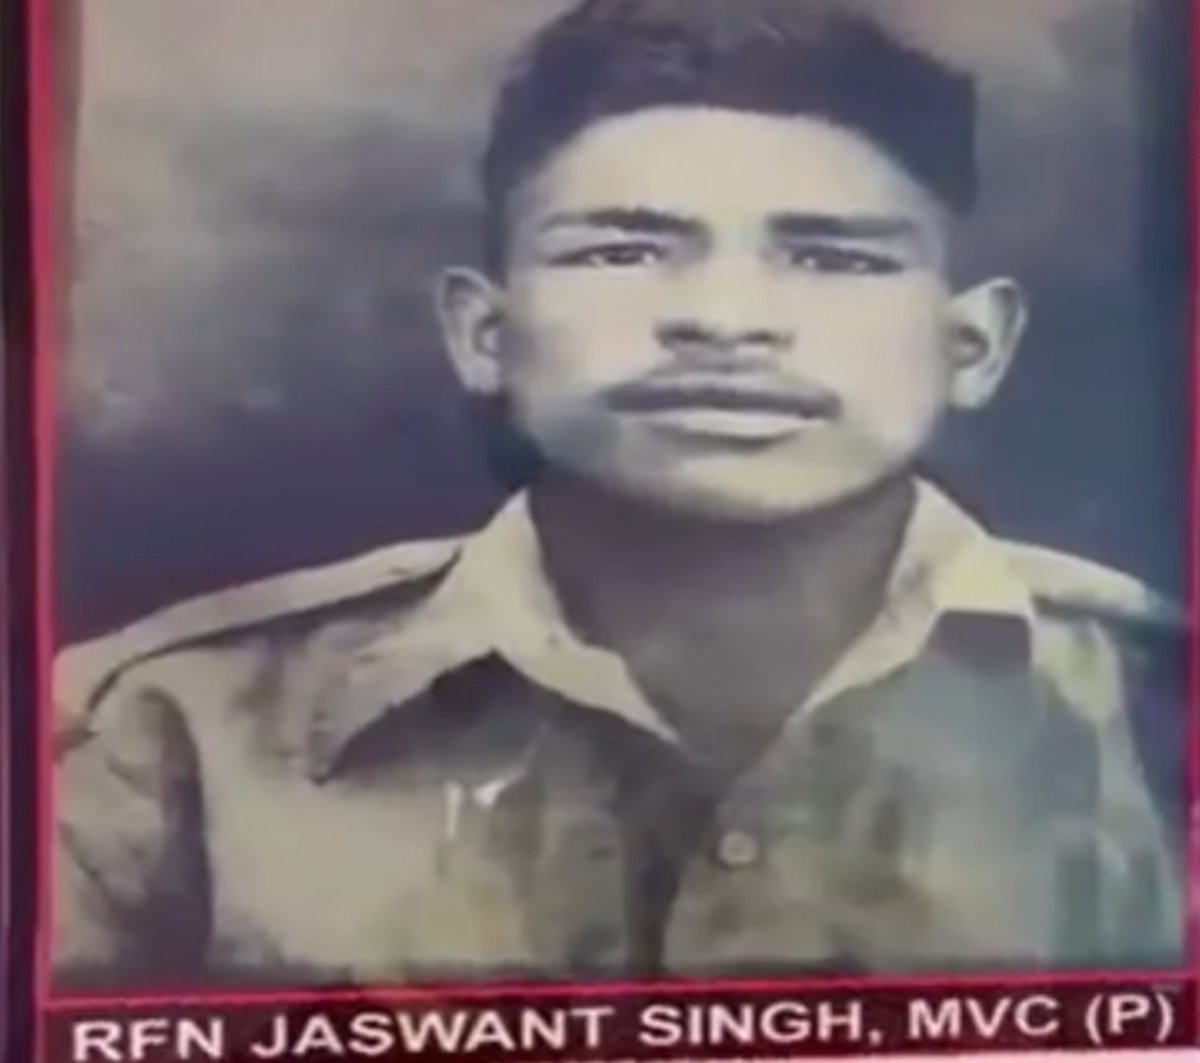 1962 चाइना के 300 जवानों को मारने वाला वीर बहादुर
The  Great  Rifleman Jaswant Singh Rawat #jaswantsingh #jaswantsinghrawat #riflemanjaswantsinghrawat
@TheLallantop @PMOIndia @ndtvindia #ARYNews #India